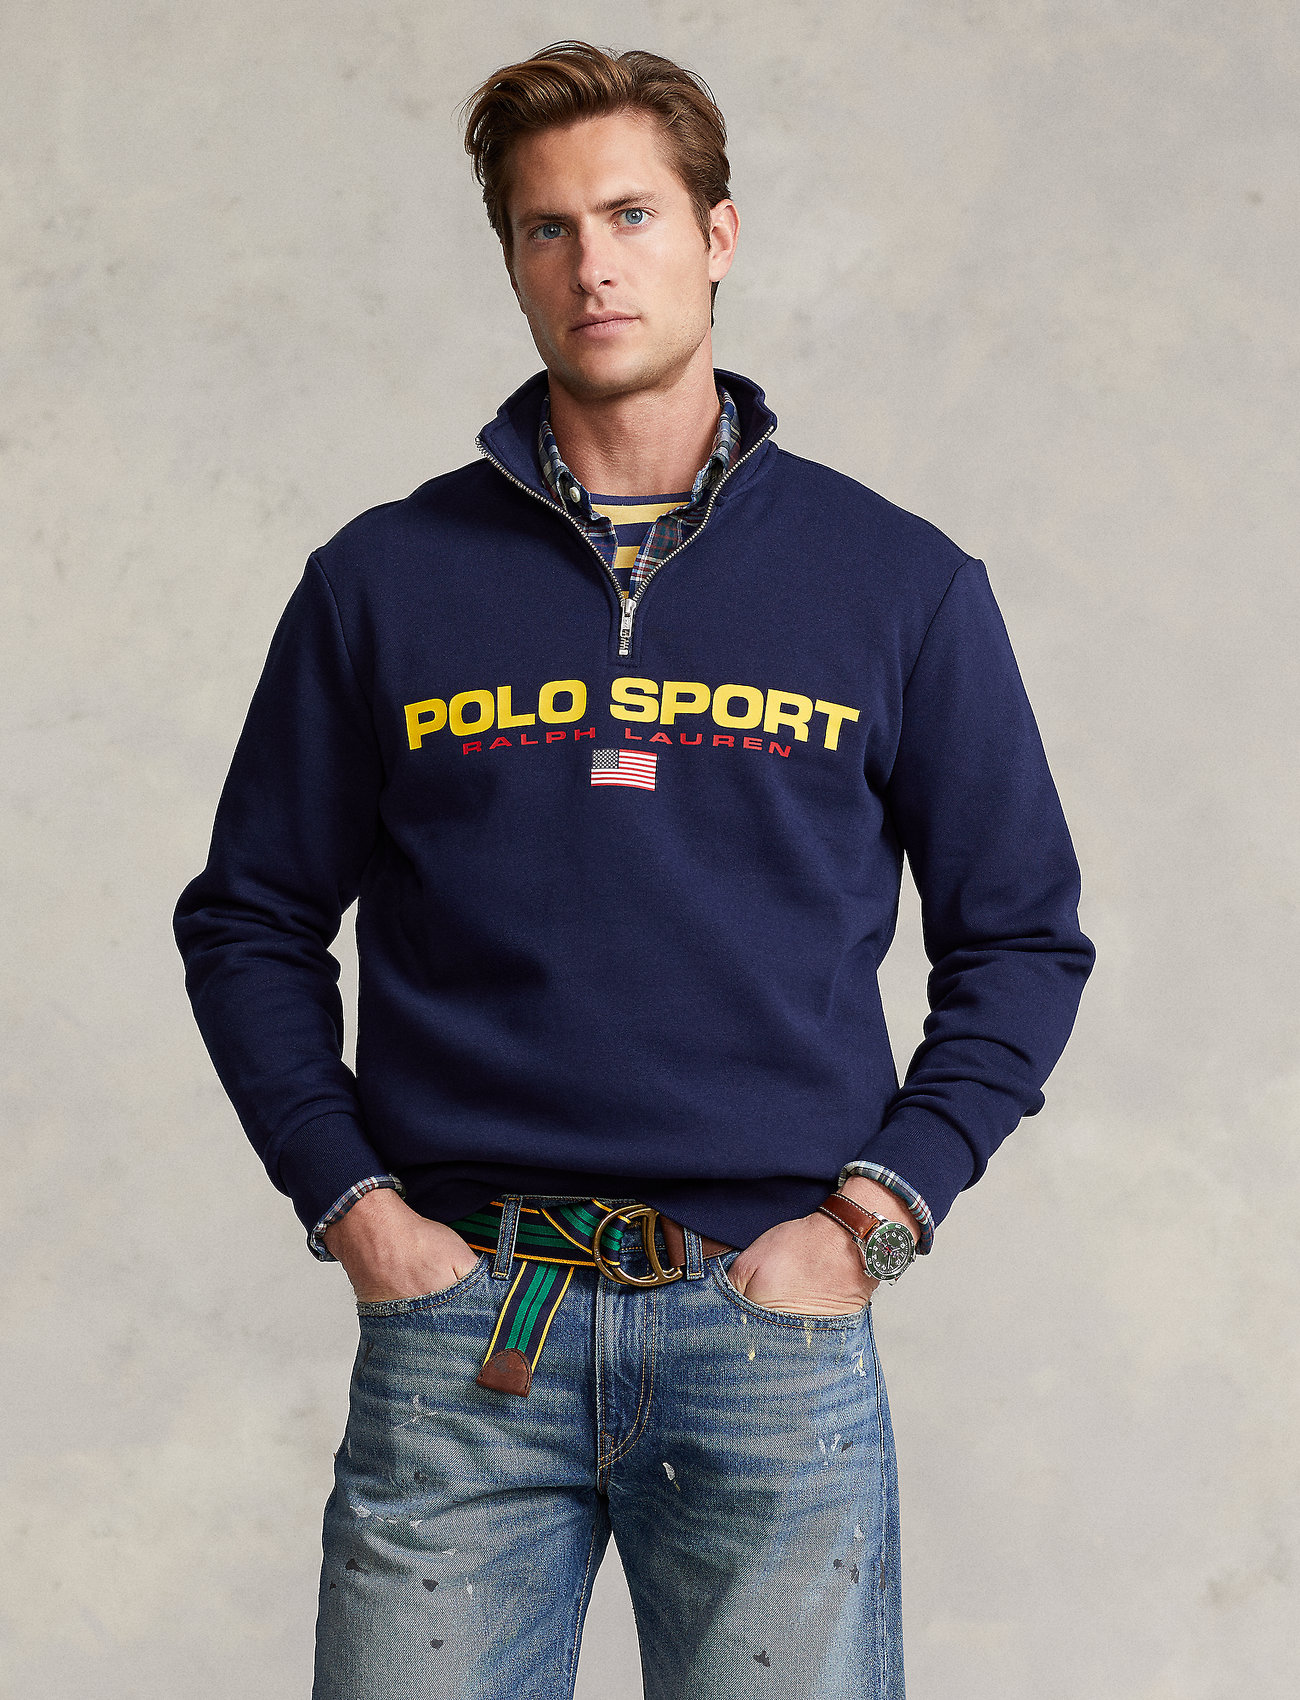 Polo Ralph Lauren Polo Sport Fleece Sweatshirt - Sweatshirts 